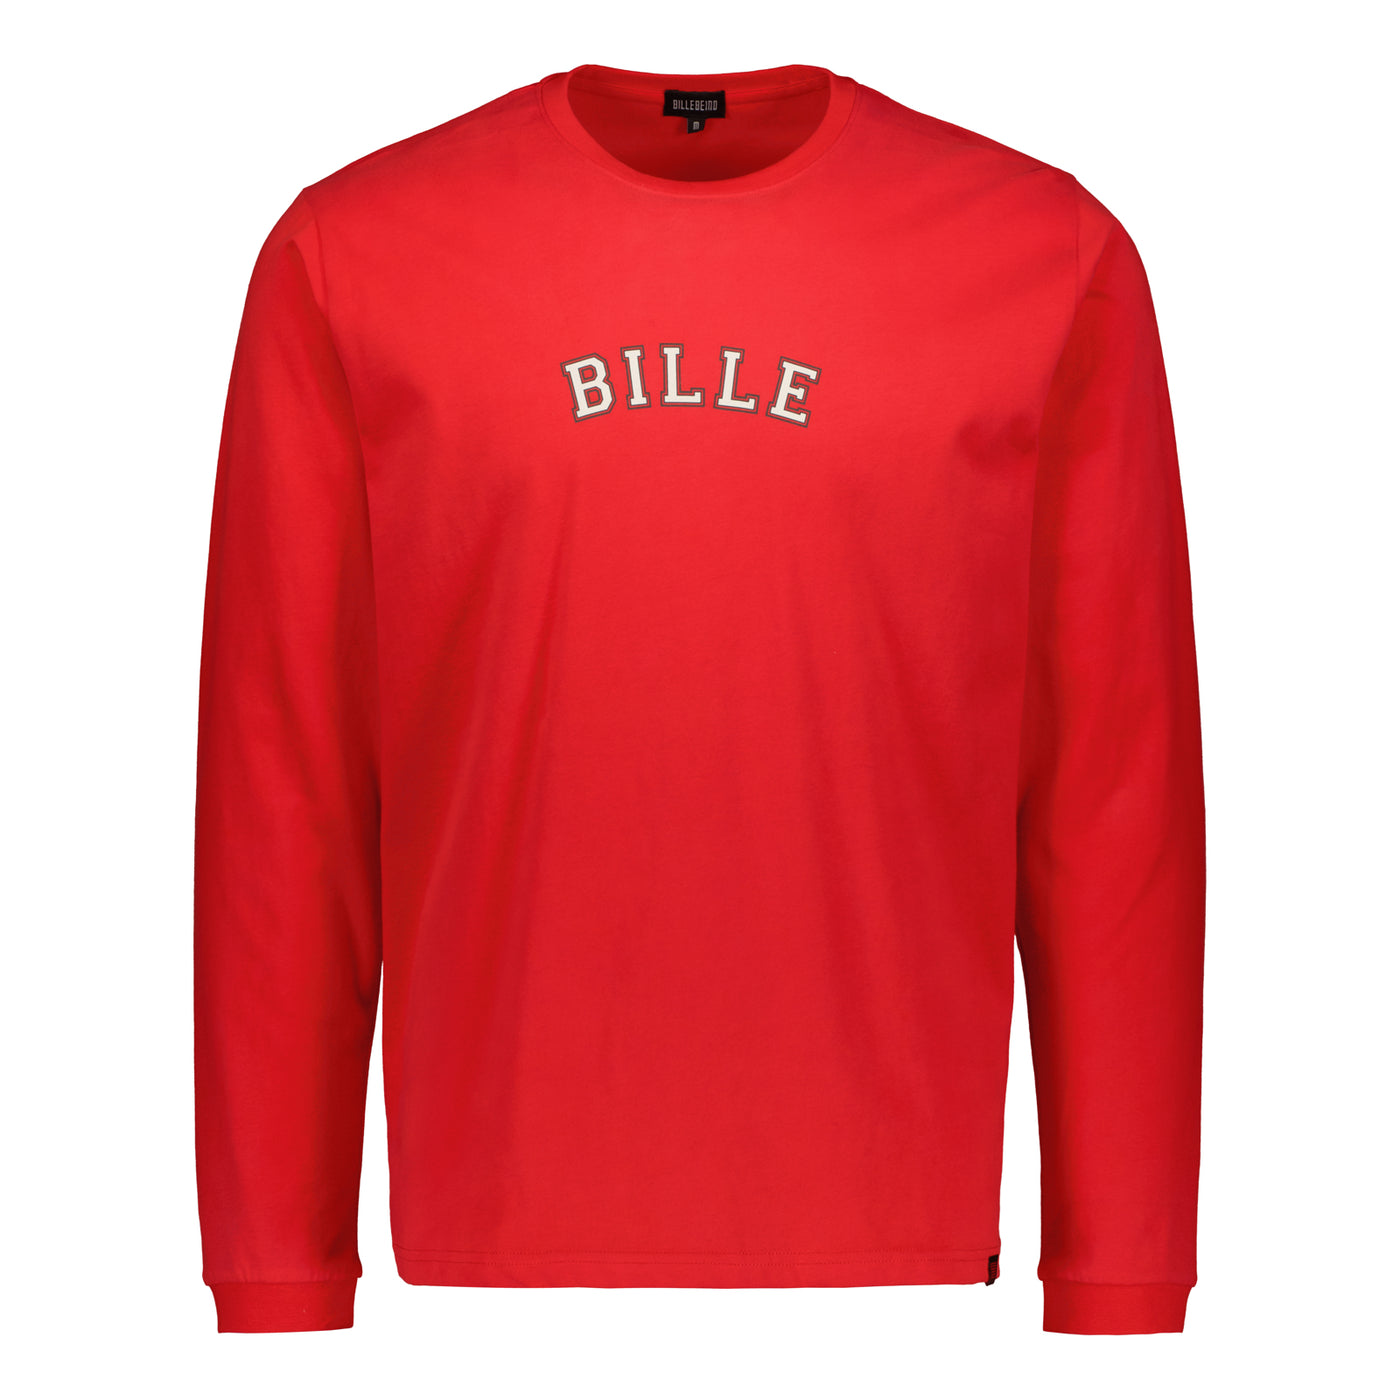 Bille Holiday Long Sleeve T-shirt Billebeino